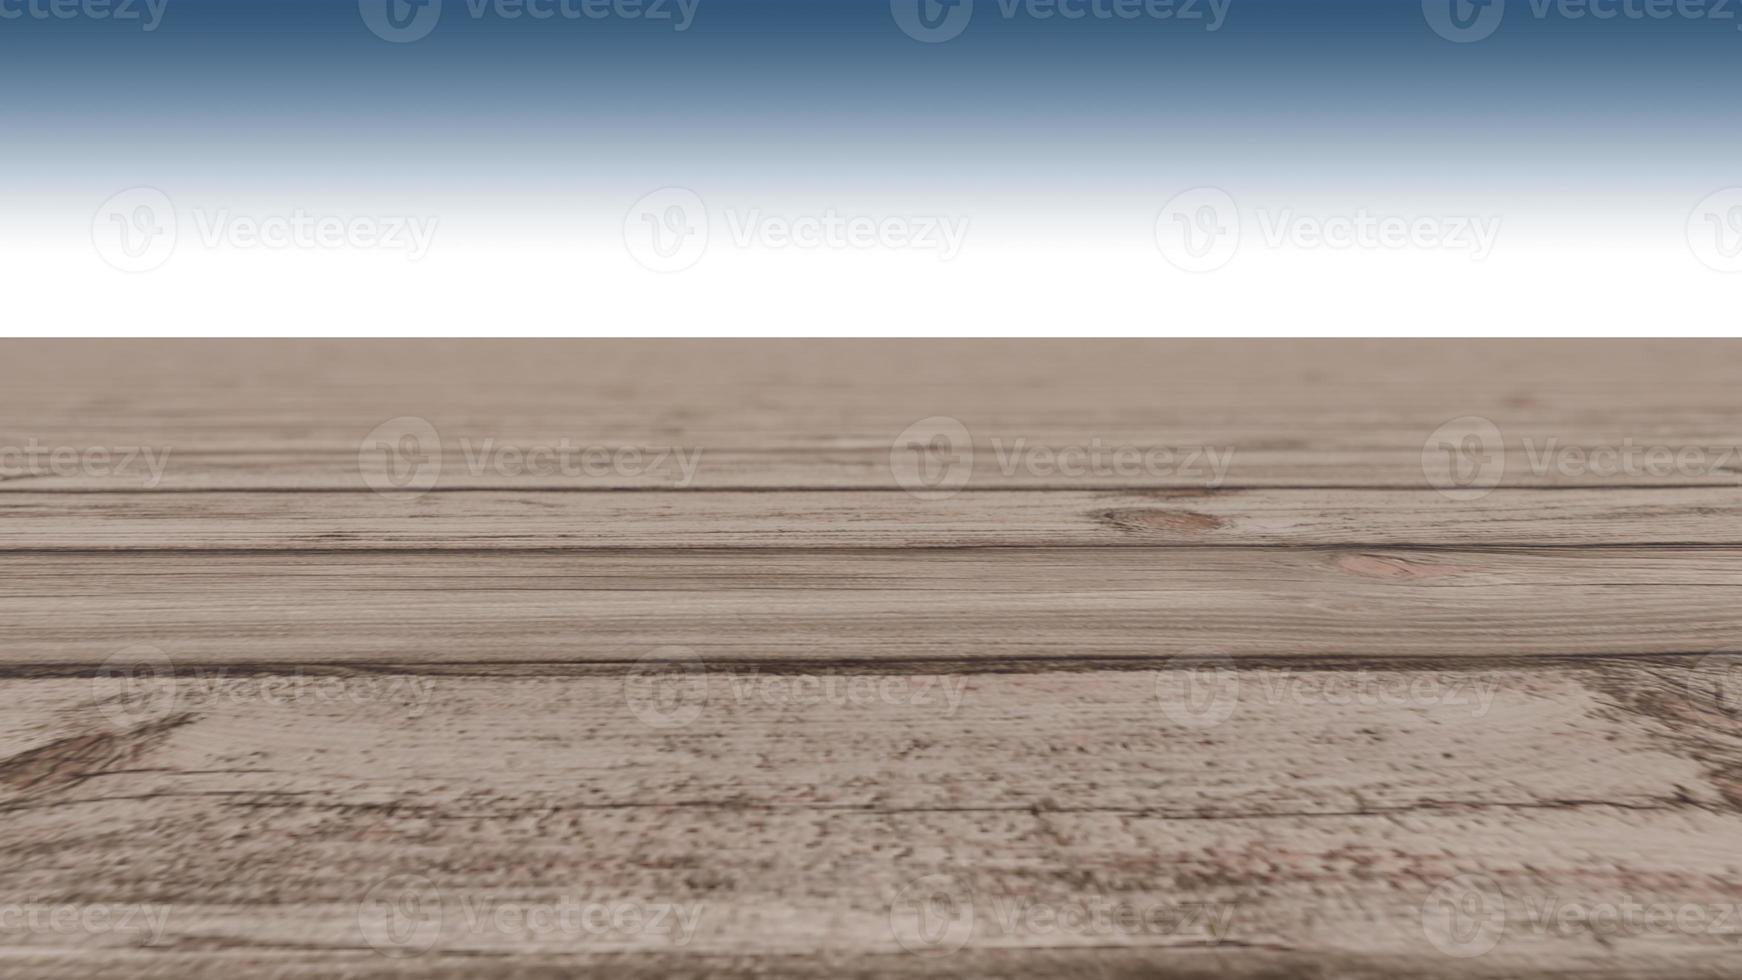 una imagen de renderizado 3d de piso de madera foto